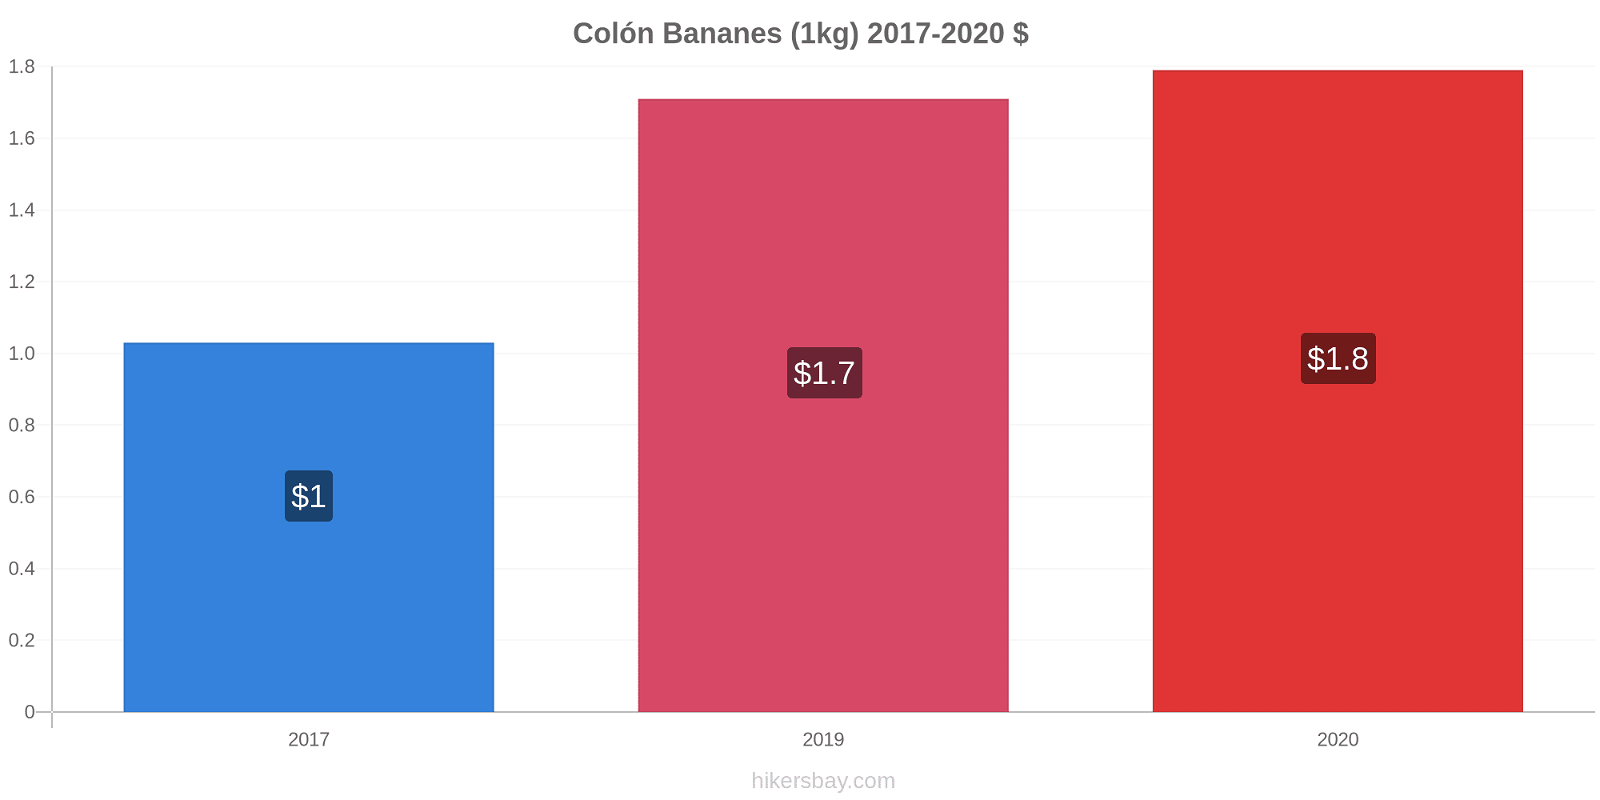 Colón changements de prix Bananes (1kg) hikersbay.com